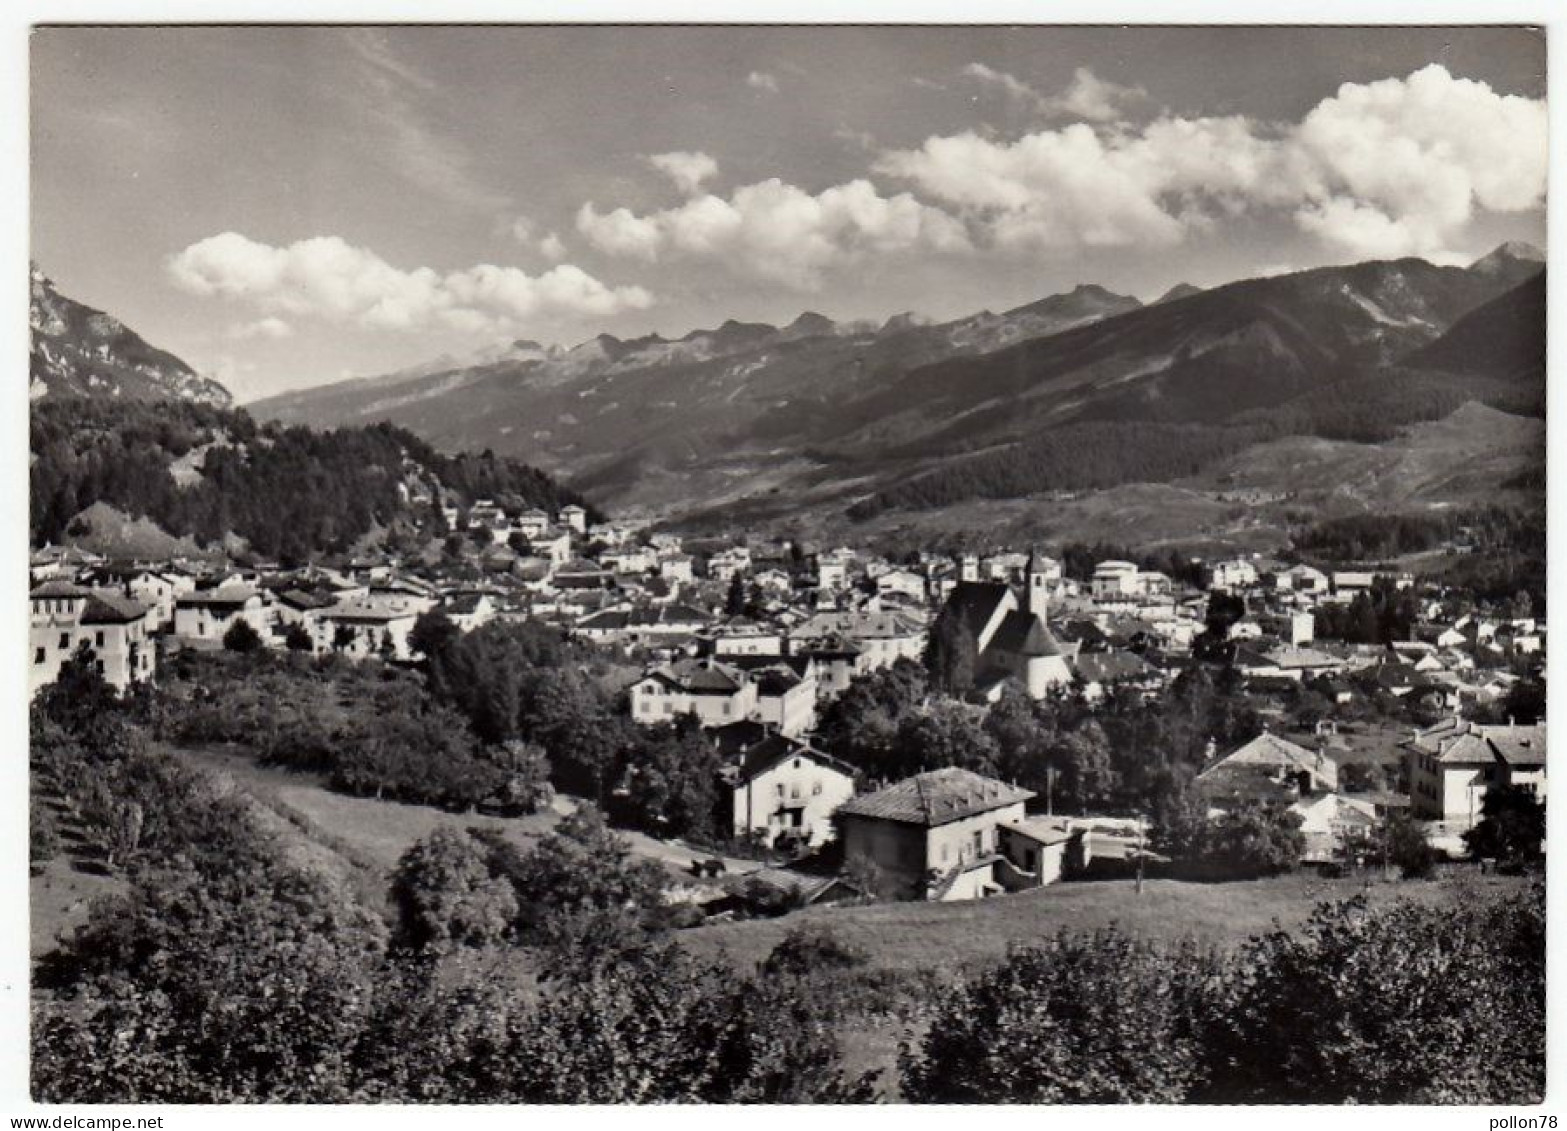 CAVALESE - VAL DI FIEMME - PANORAMA - TRENTO - 1966 - Trento